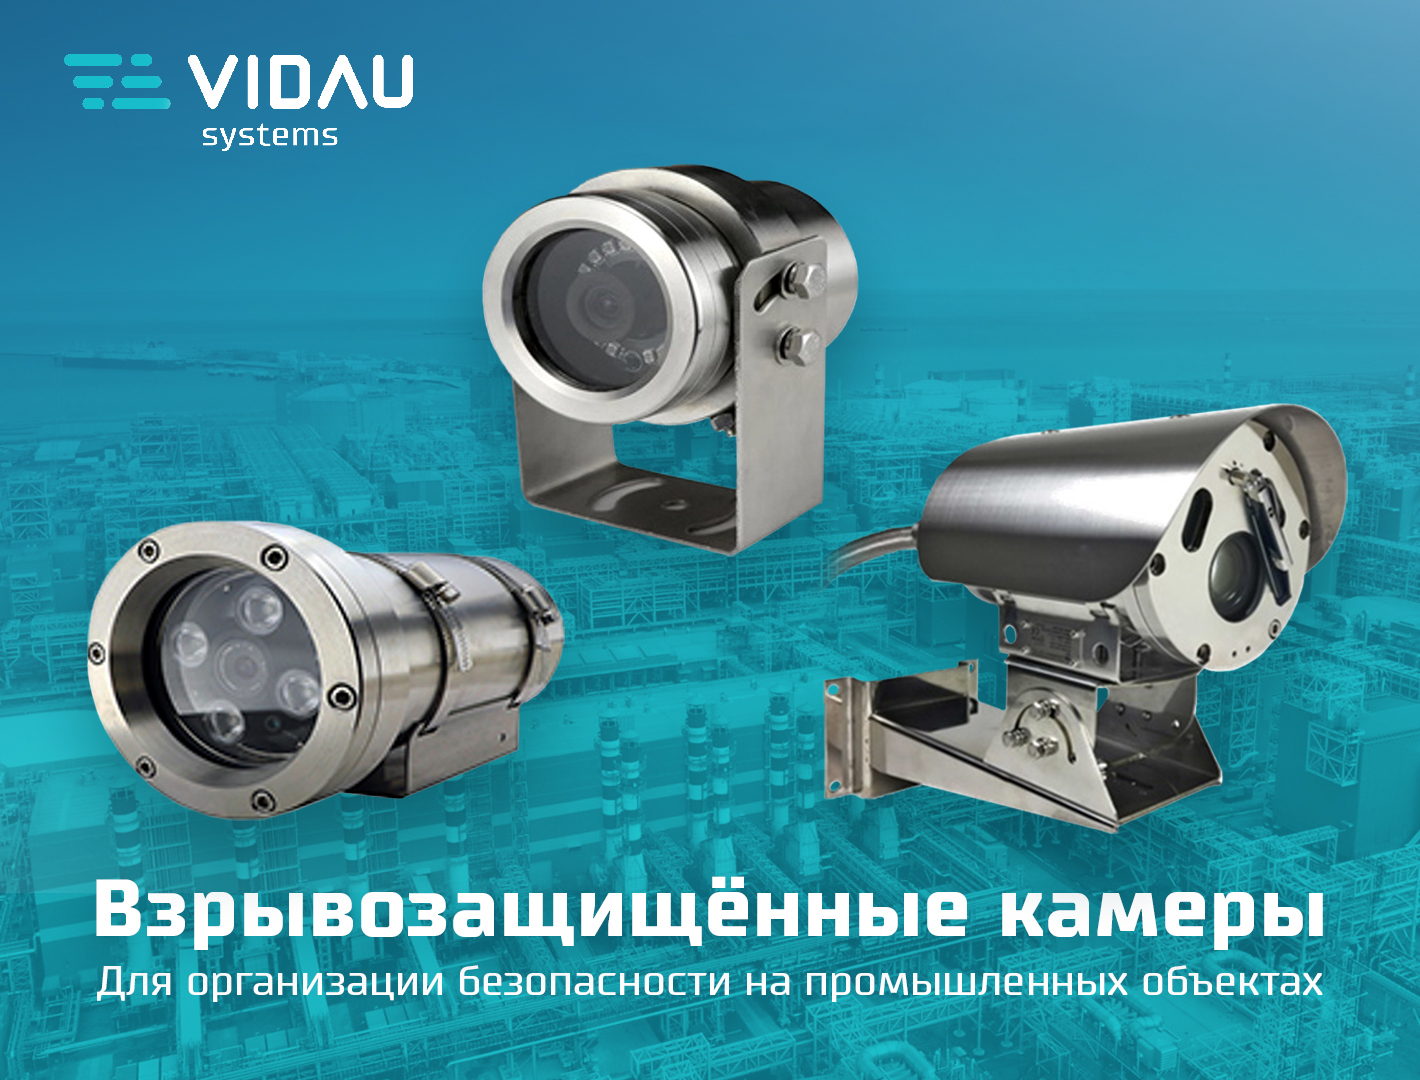 Взрывозащищенные камеры видеонаблюдения - безопасность промышленных объектов.